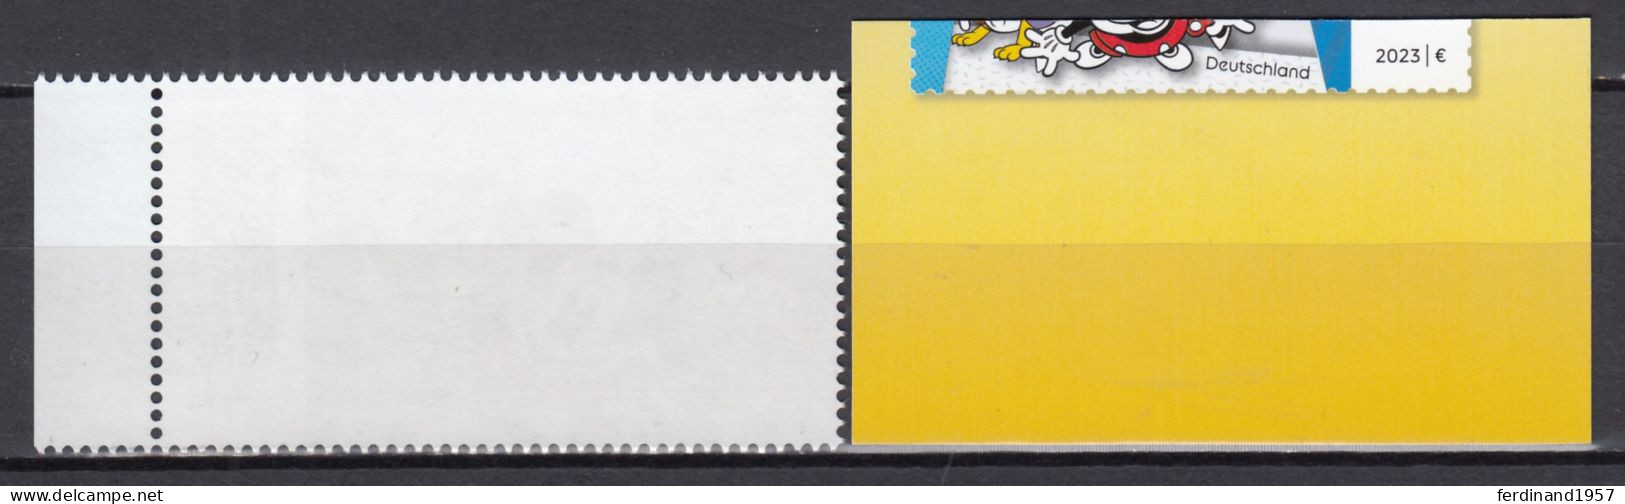 BRD 2023 Mi.3754+3756-SK Als Postfrische** Werte- „100 Jahre Disney“ MNH - Unused Stamps